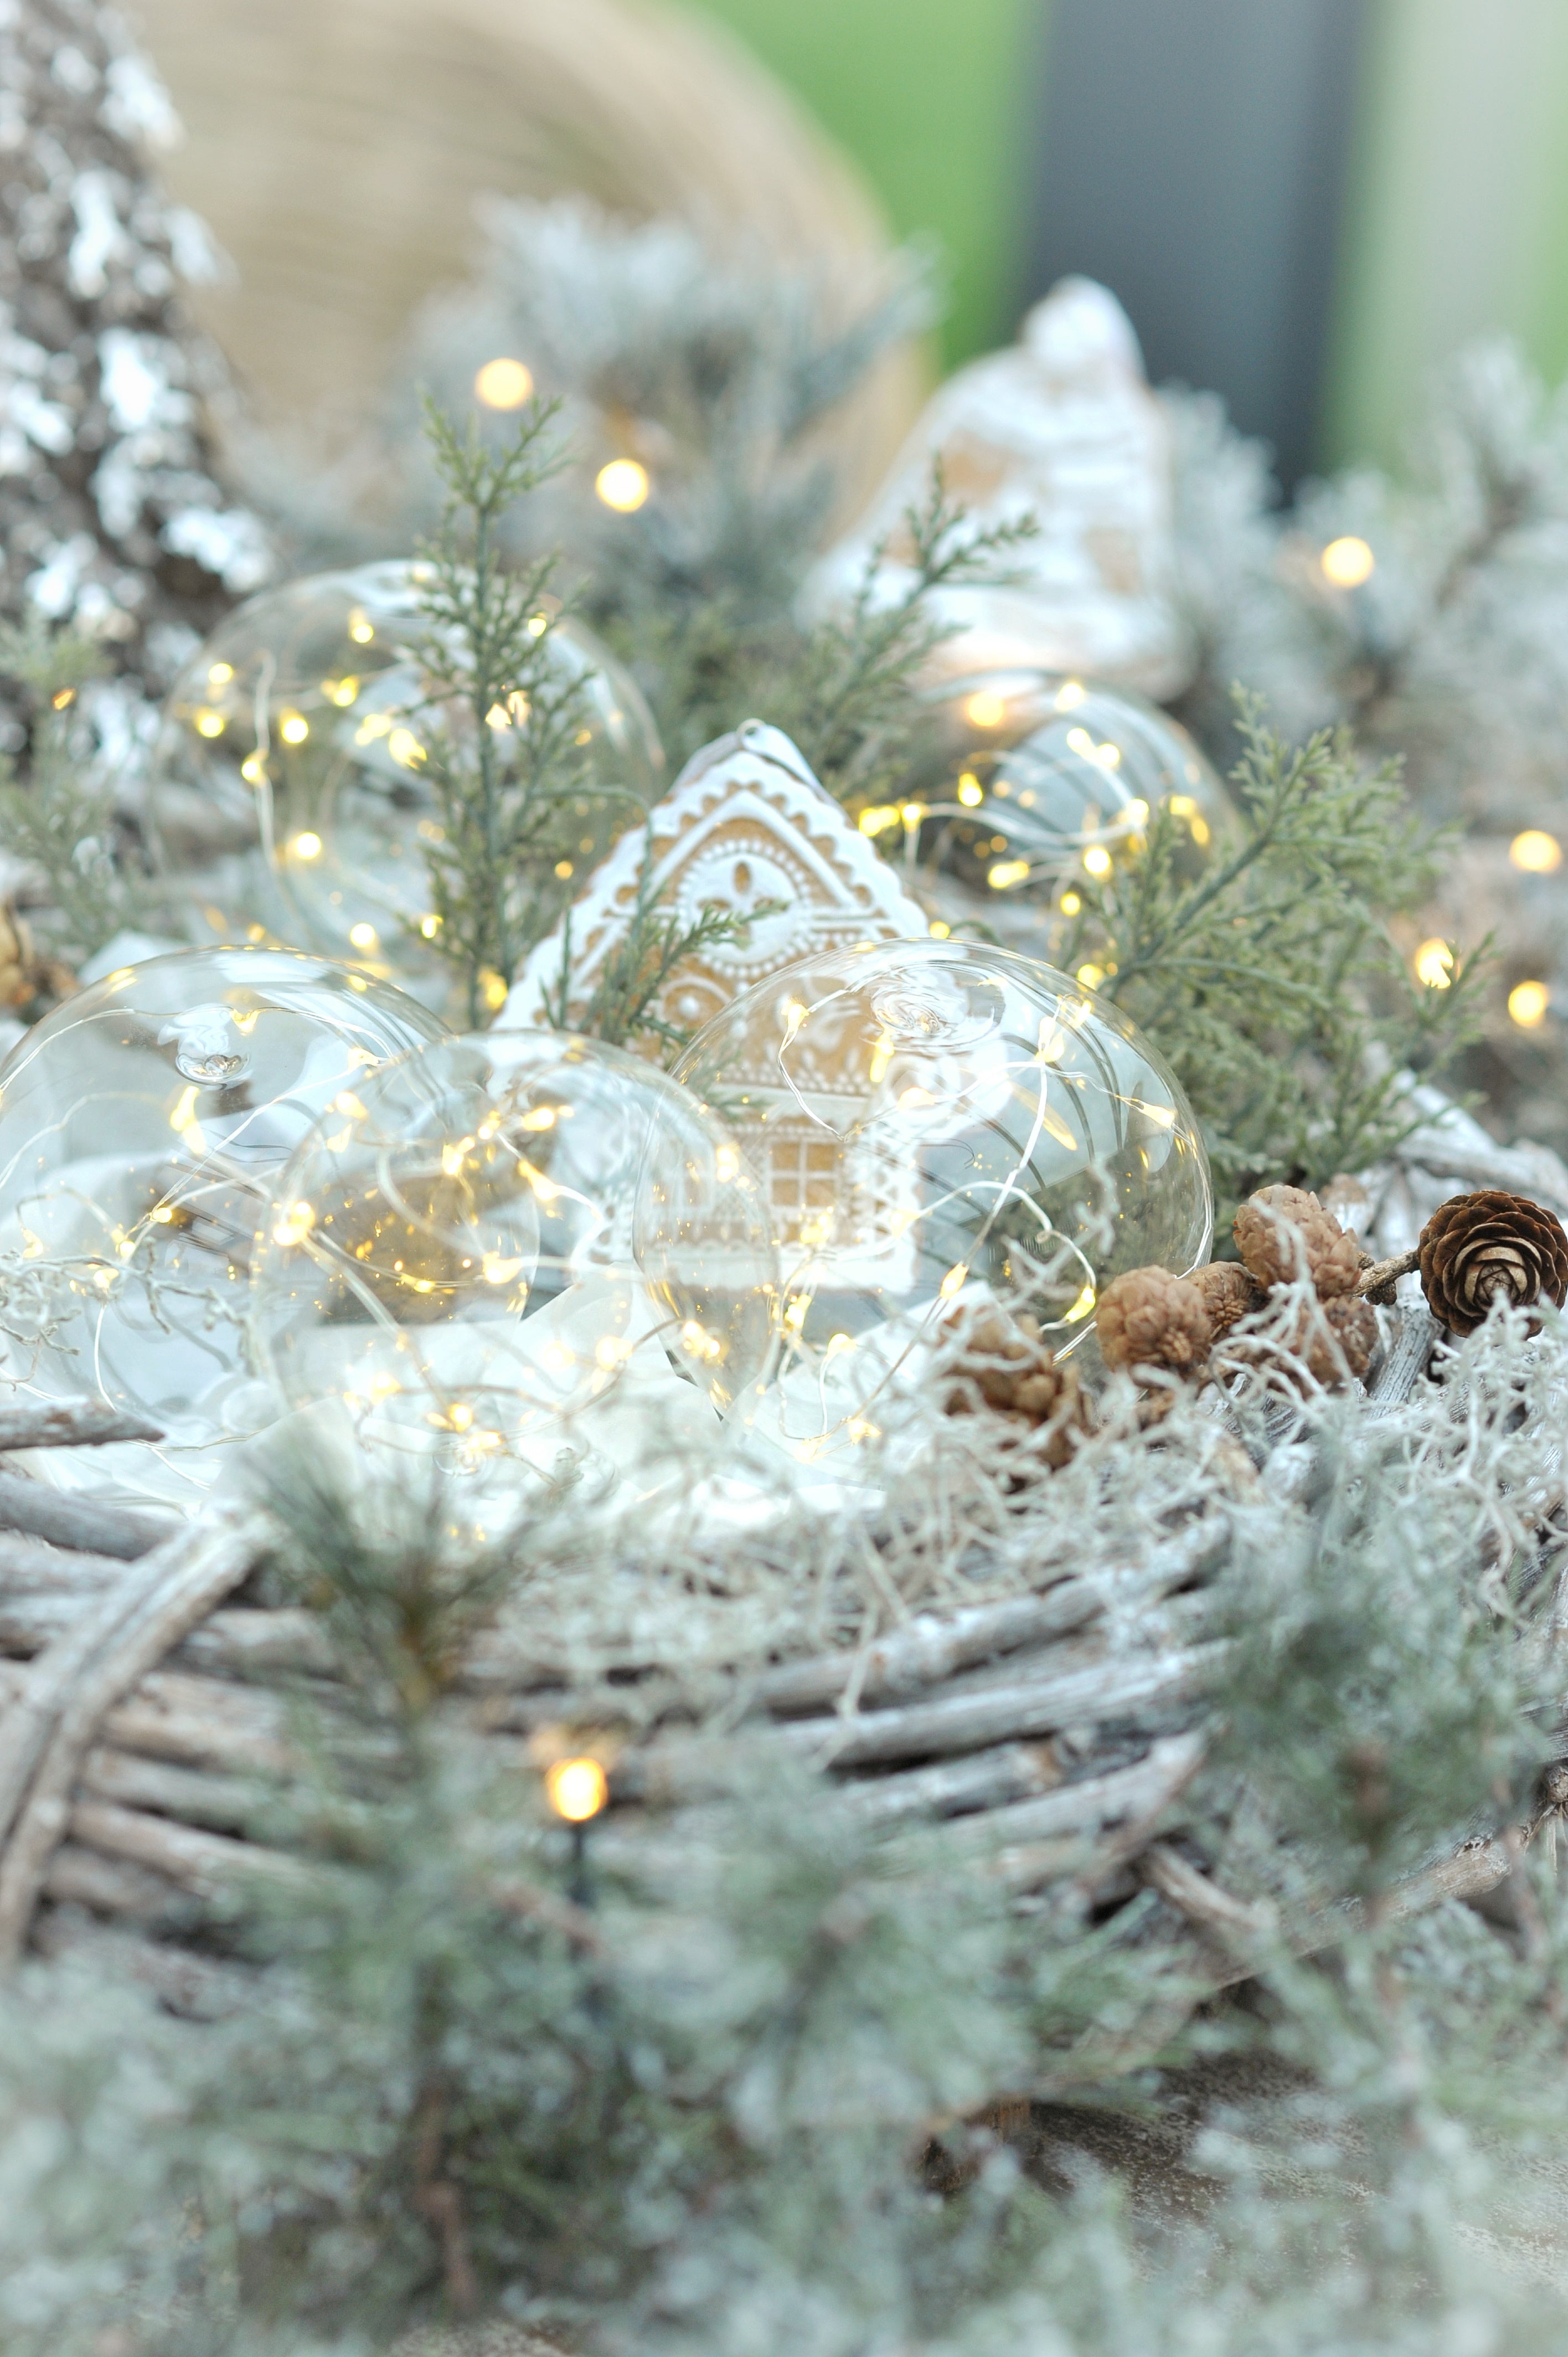 Krinner Lumix Light Balls dekoriert in einem Holzkranz mit Weihnachtsdeko